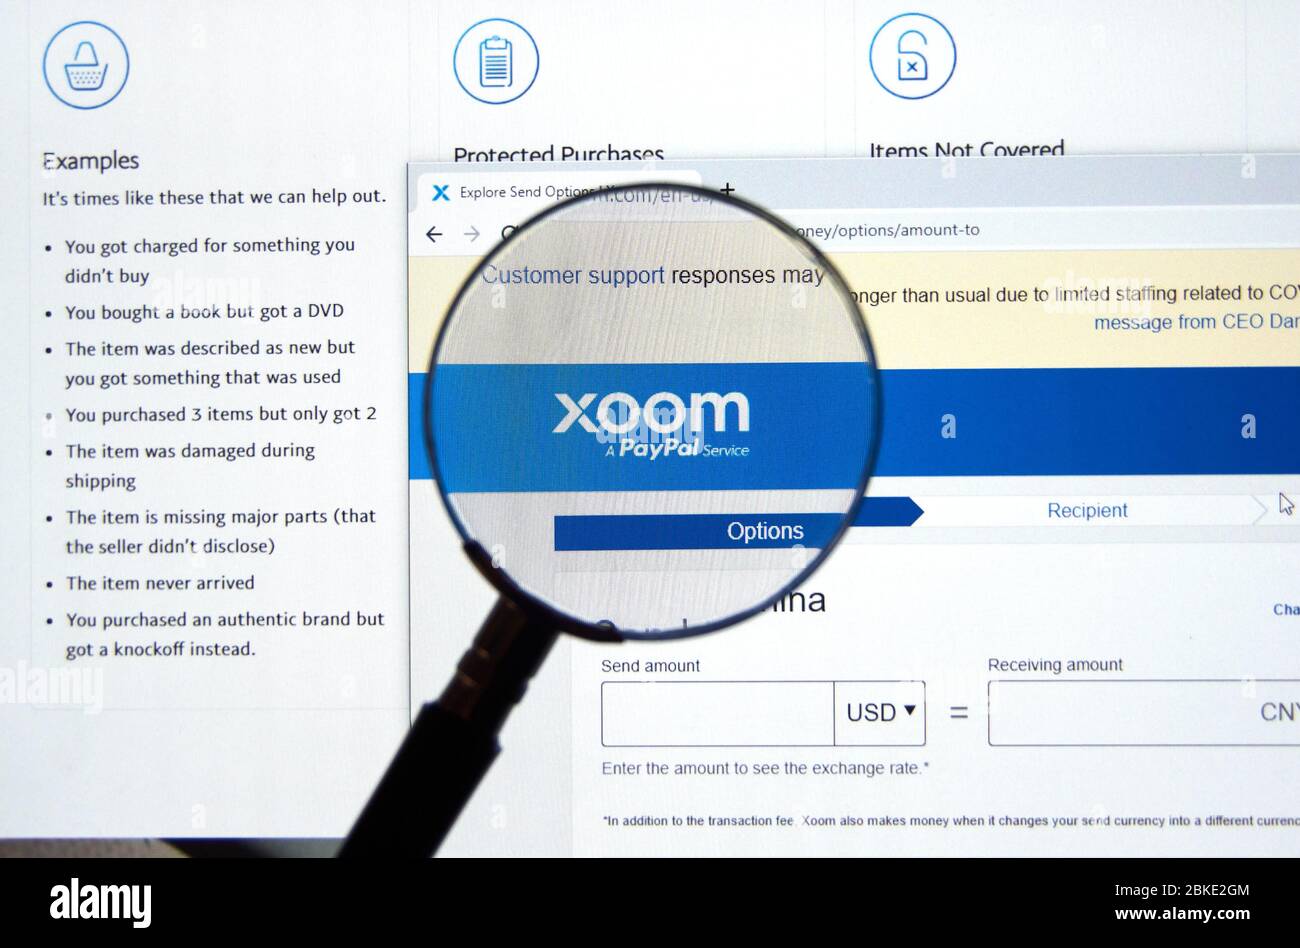 Montreal, Canada - 2 maggio 2020: Sito web e logo Xoom. Xoom è il servizio PayPal di trasferimento elettronico di fondi che permette ai consumatori di inviare denaro, pagare b Foto Stock